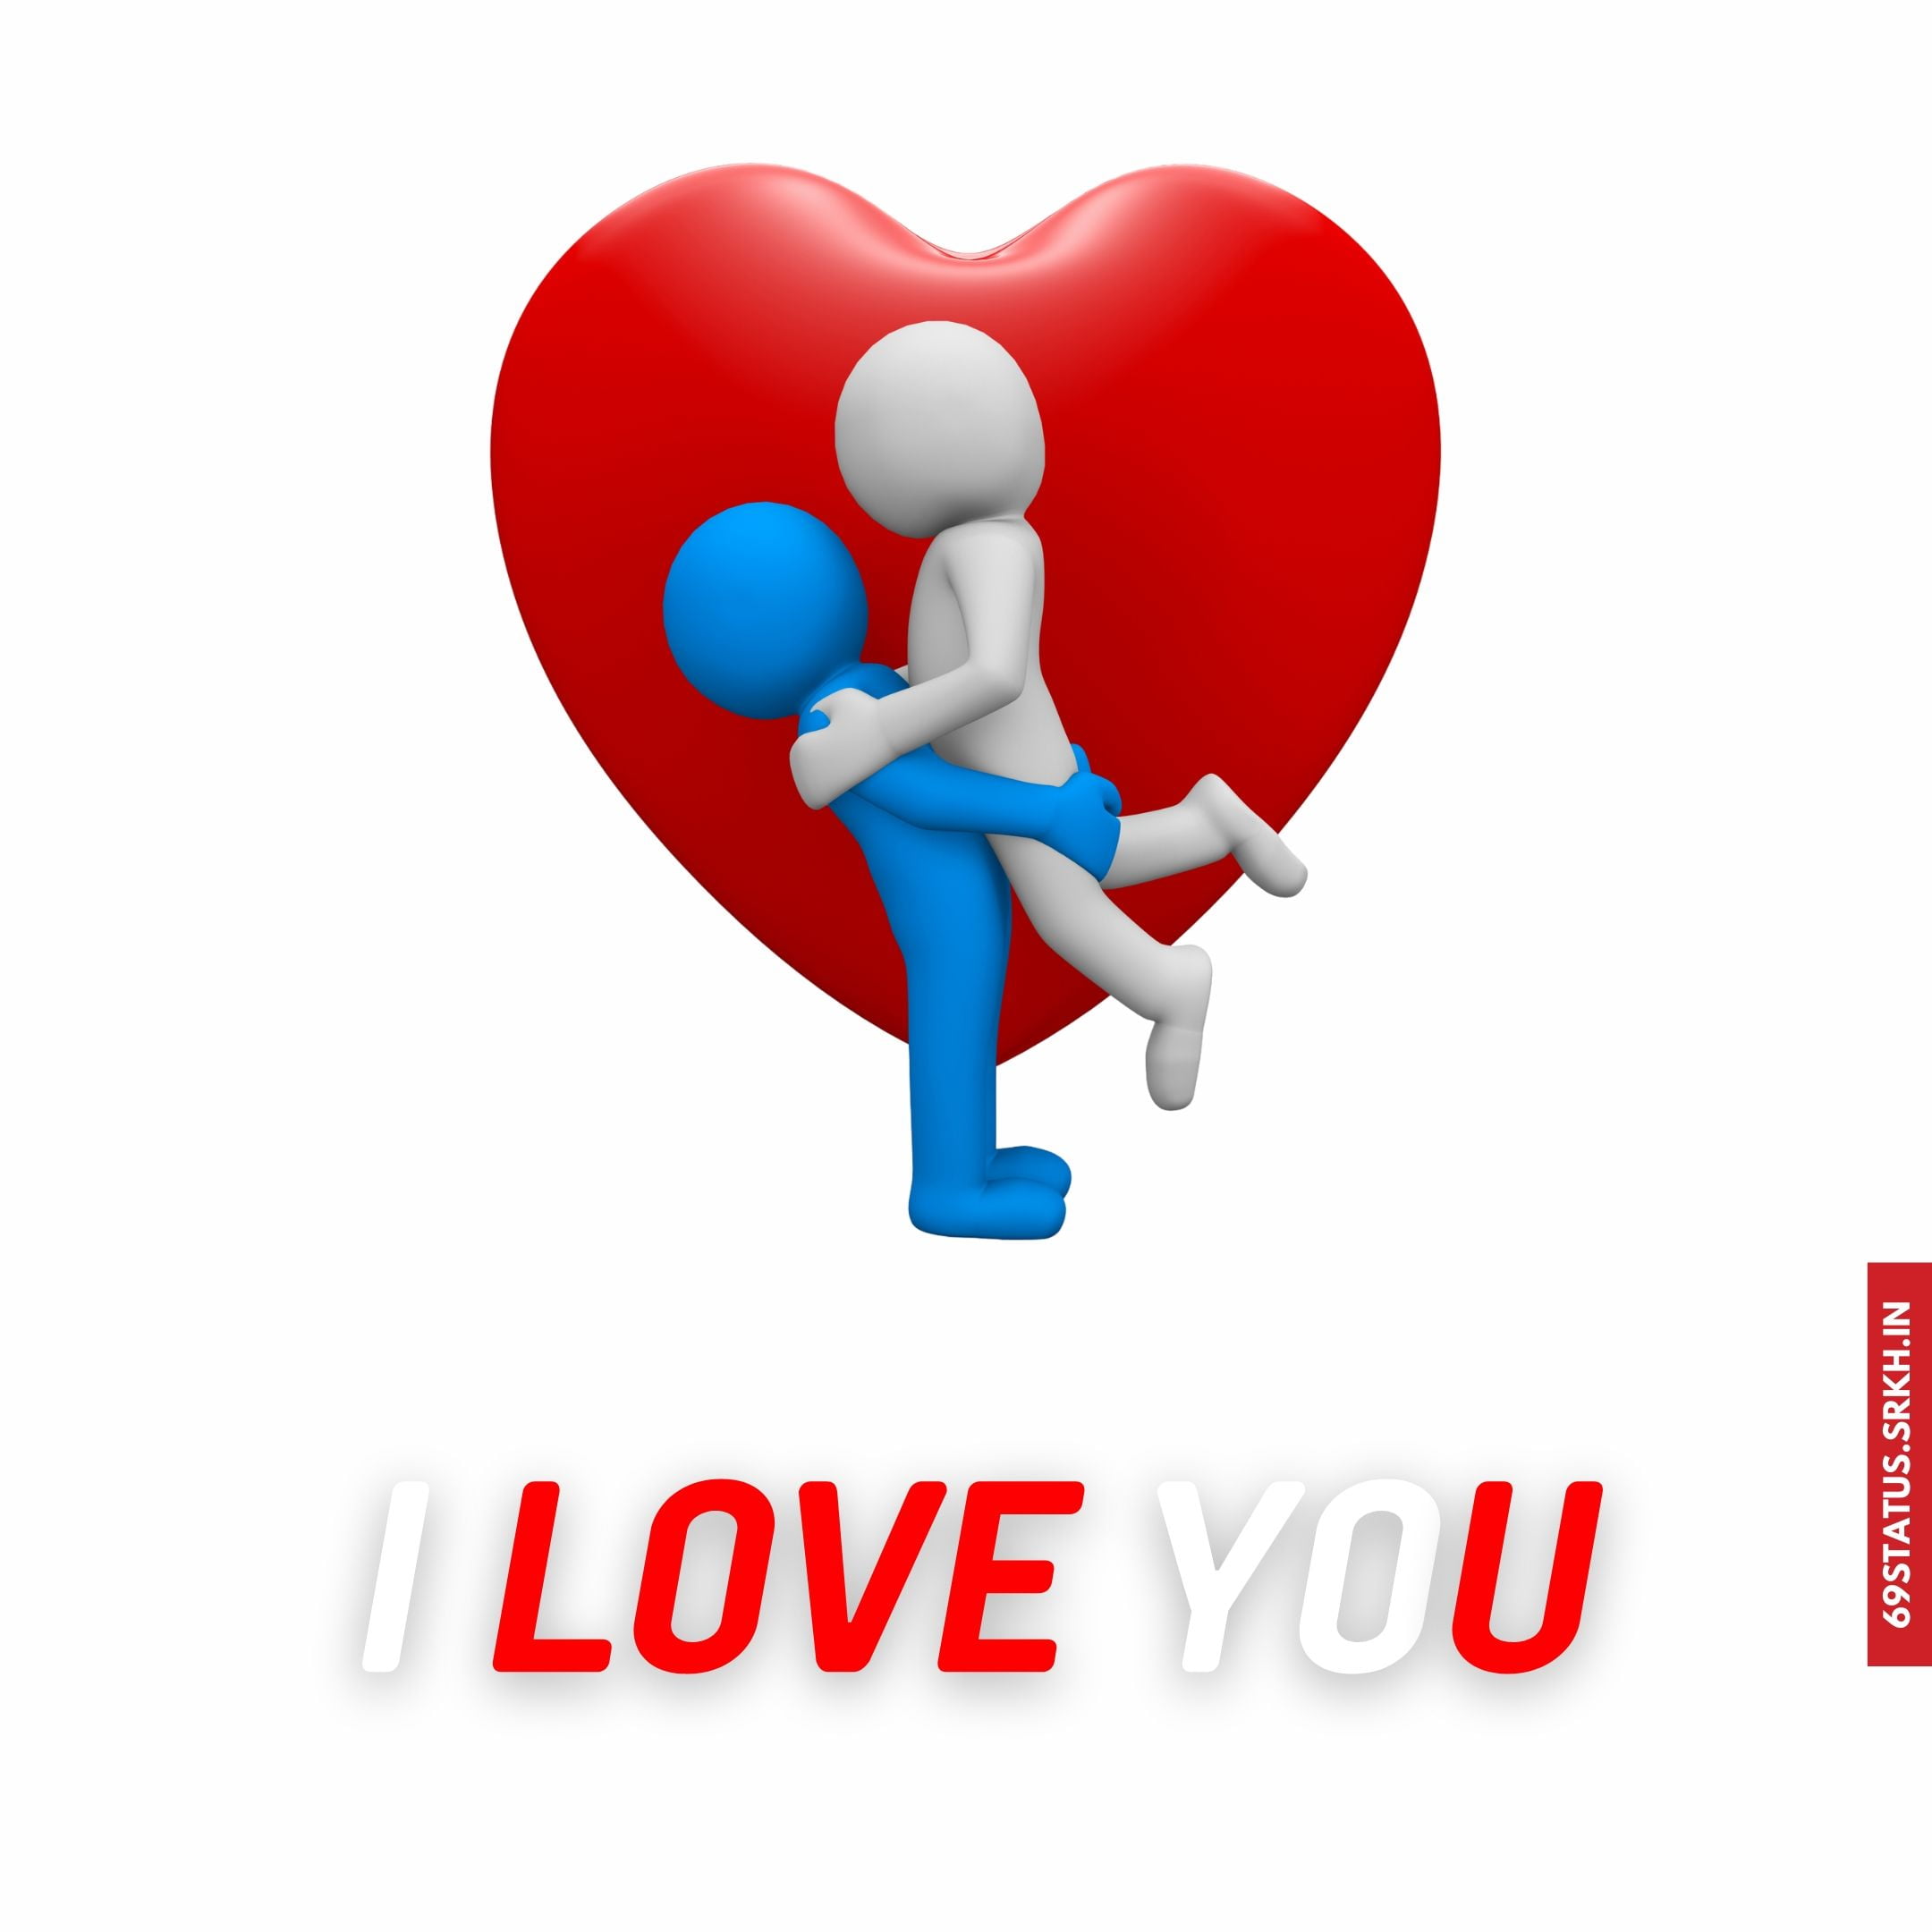 I Love You cartoon images Download free - Images SRkh